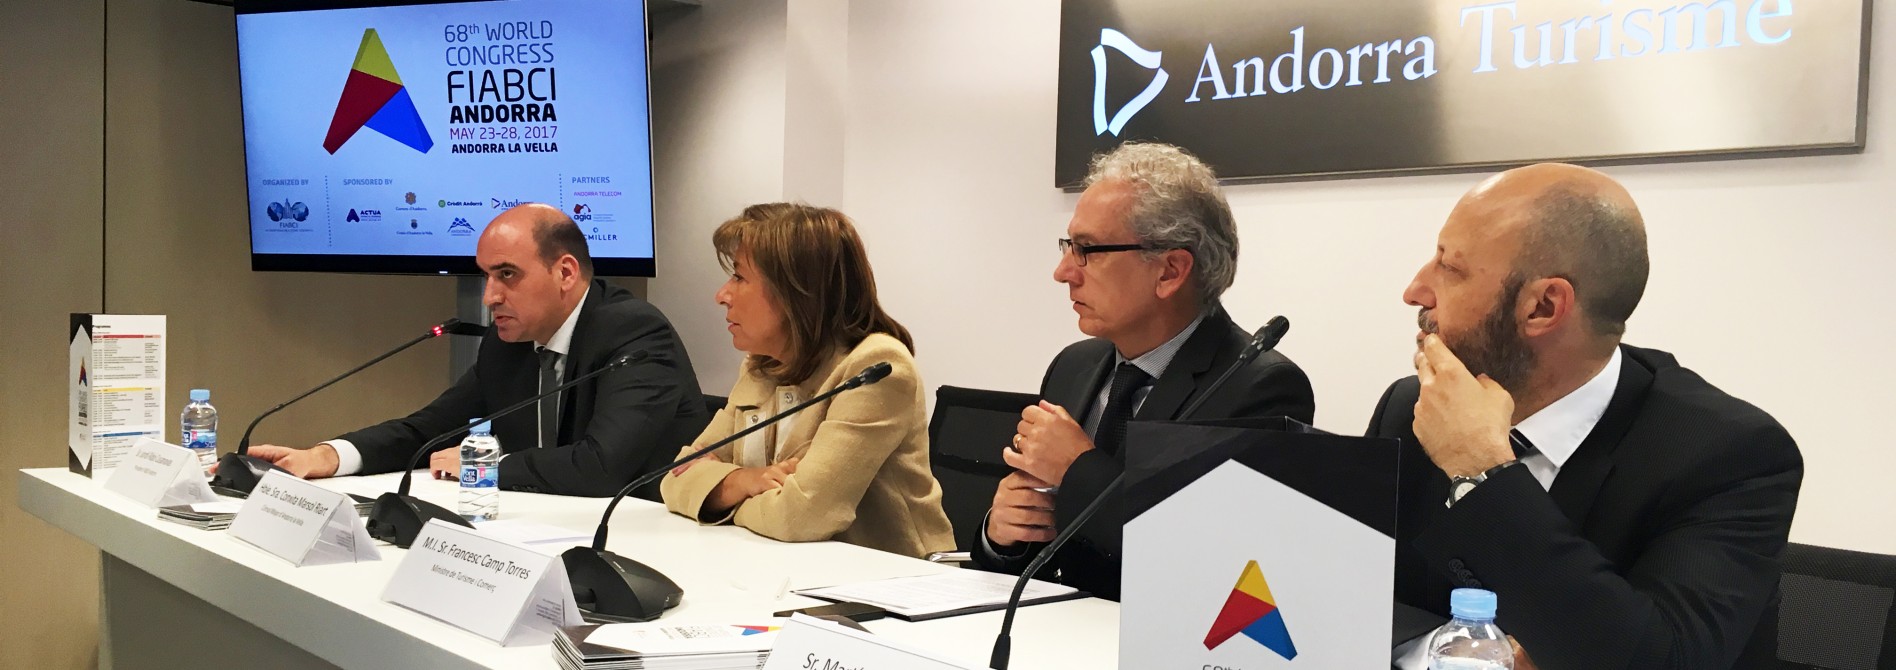 Llega a Andorra el congreso mundial más importante del mundo del sector inmobiliario con el apoyo de ACTUA